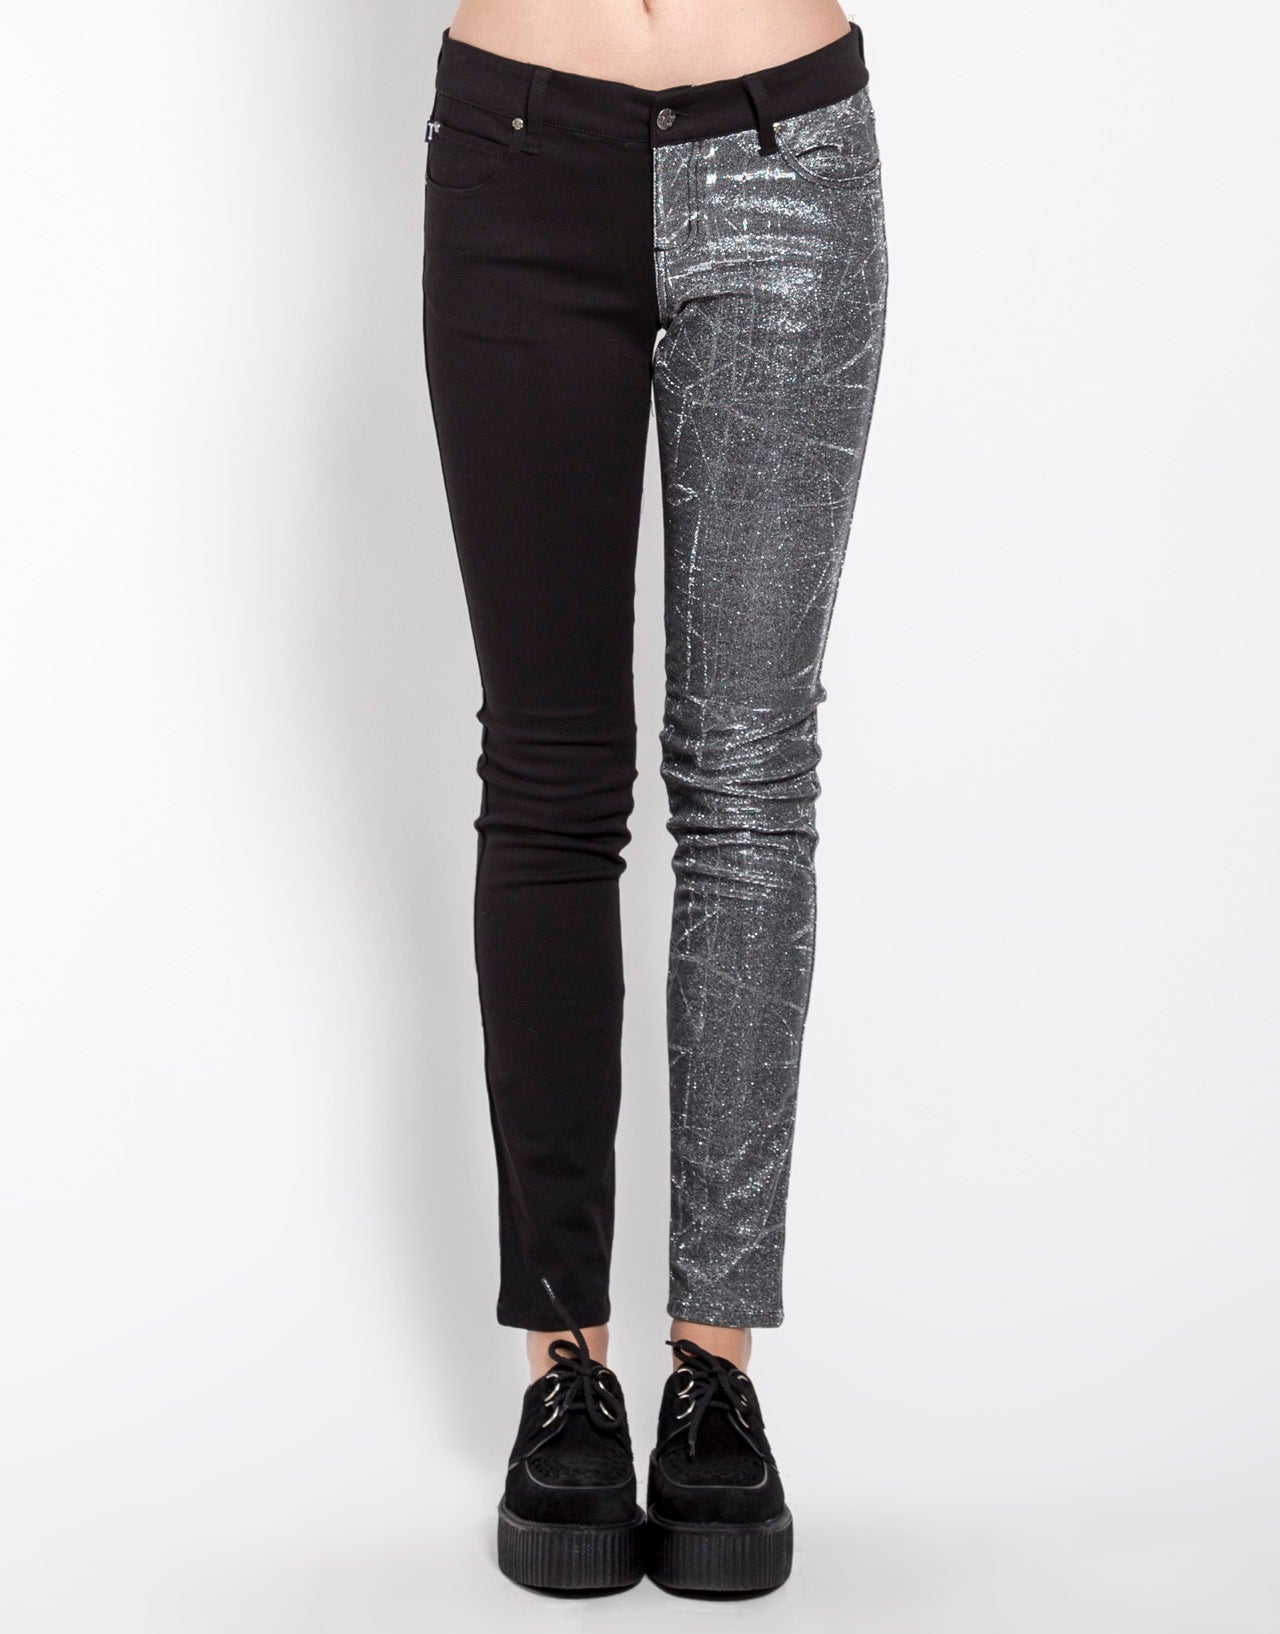 Split Leg Shine On Jeans - Black/Silver